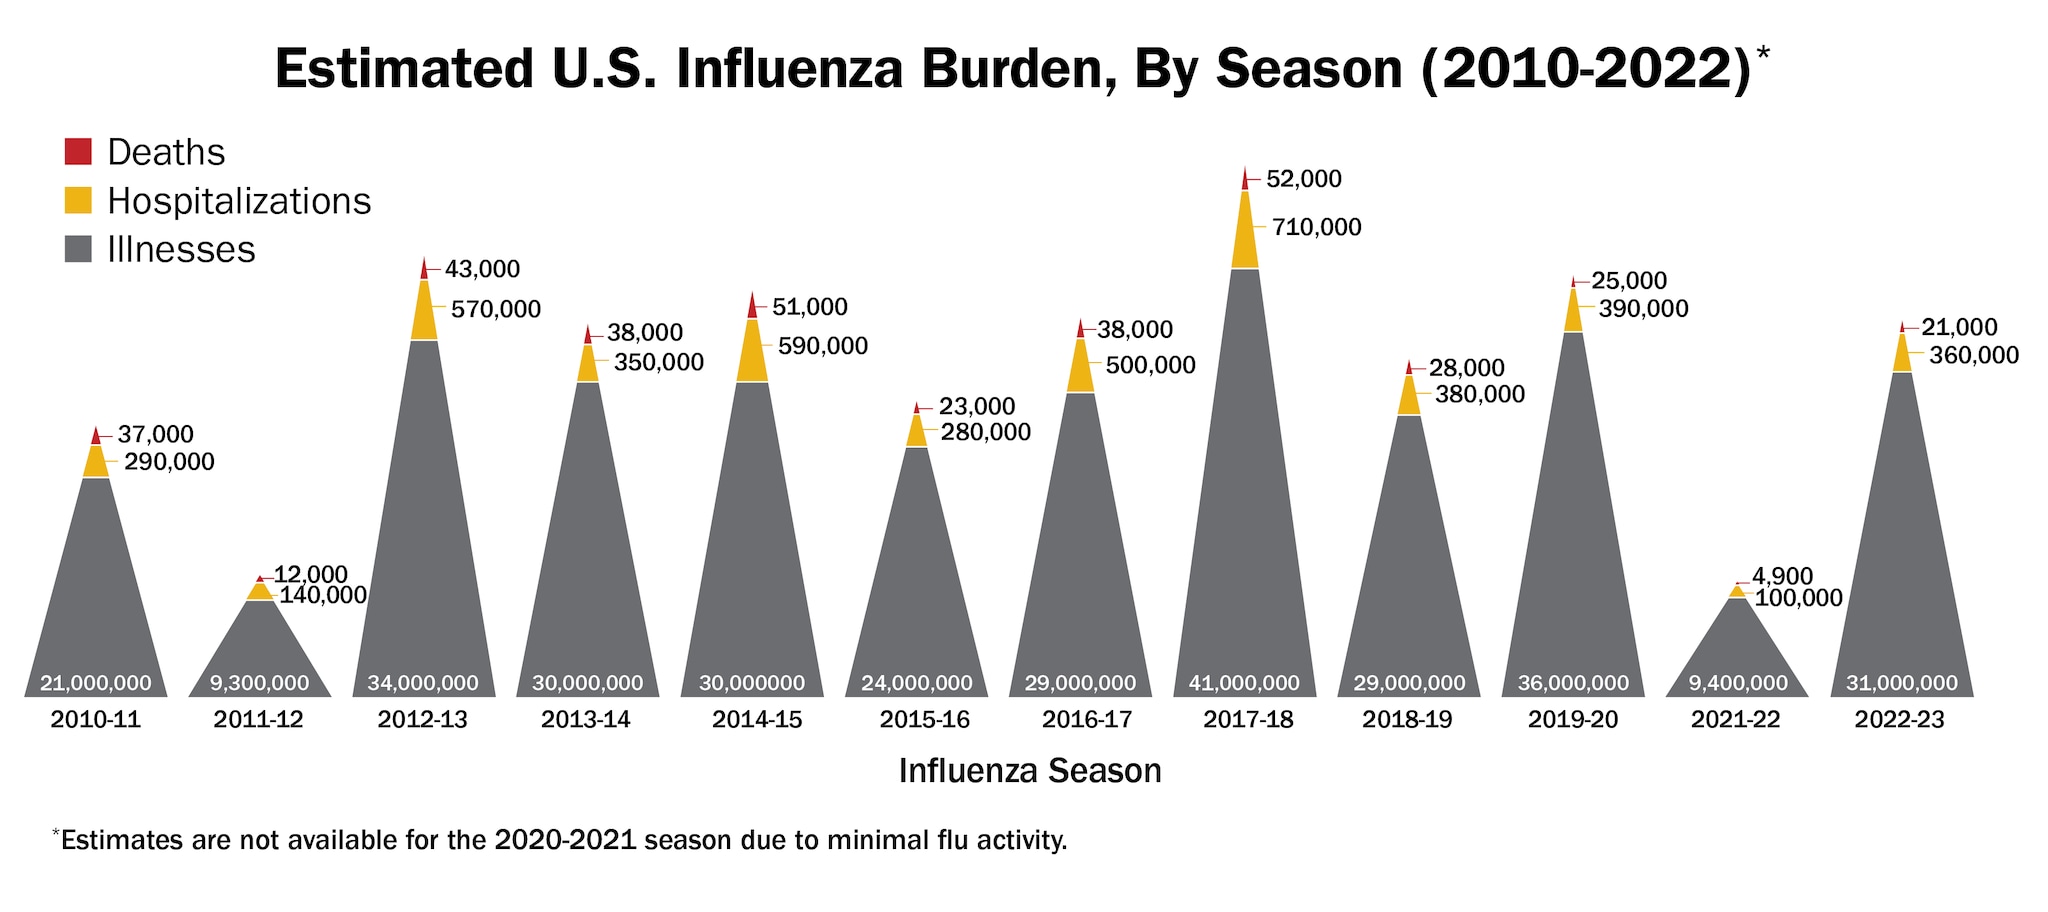 Carga estimada de la influenza en los EE. UU., por temporada (2010-2022)